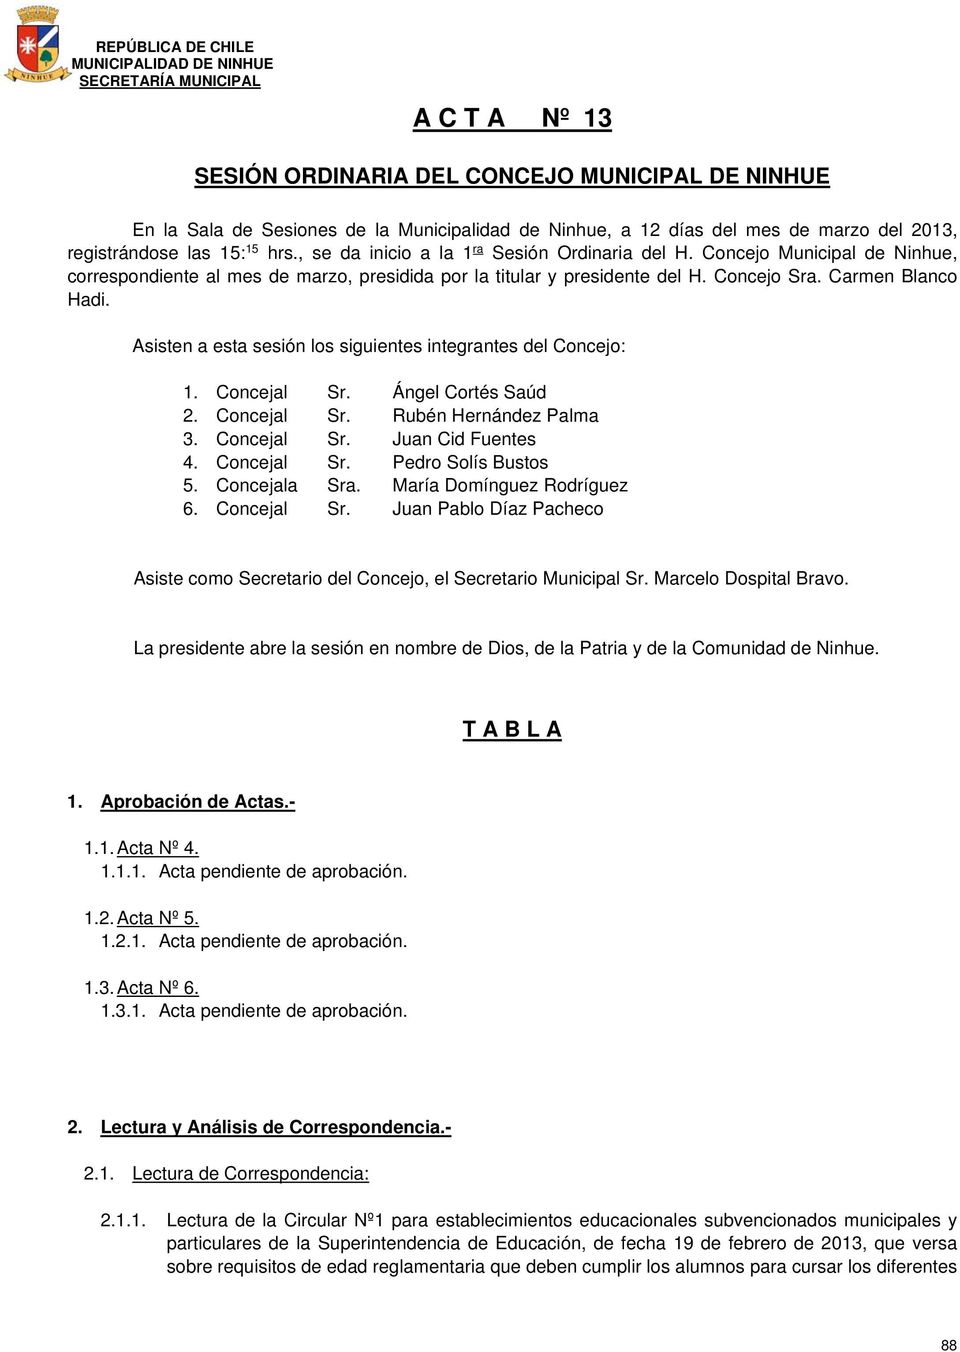 Asisten a esta sesión los siguientes integrantes del Concejo: 1. Concejal Sr. Ángel Cortés Saúd 2. Concejal Sr. Rubén Hernández Palma 3. Concejal Sr. Juan Cid Fuentes 4. Concejal Sr. Pedro Solís Bustos 5.